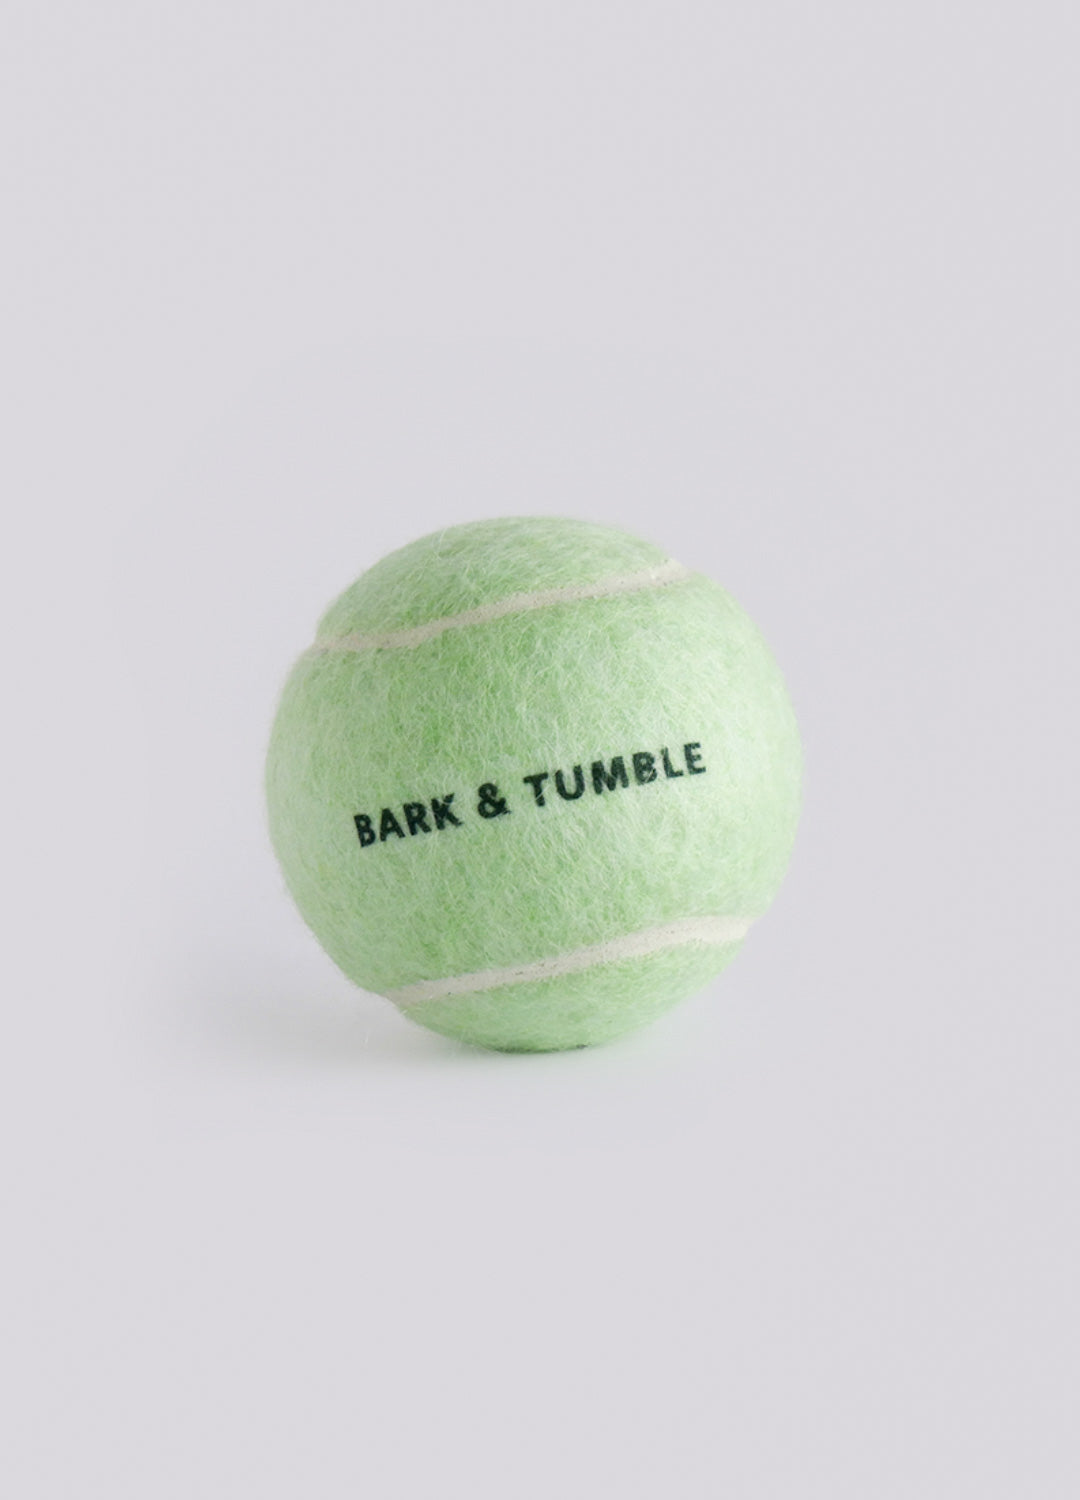 Mint Tennis ball